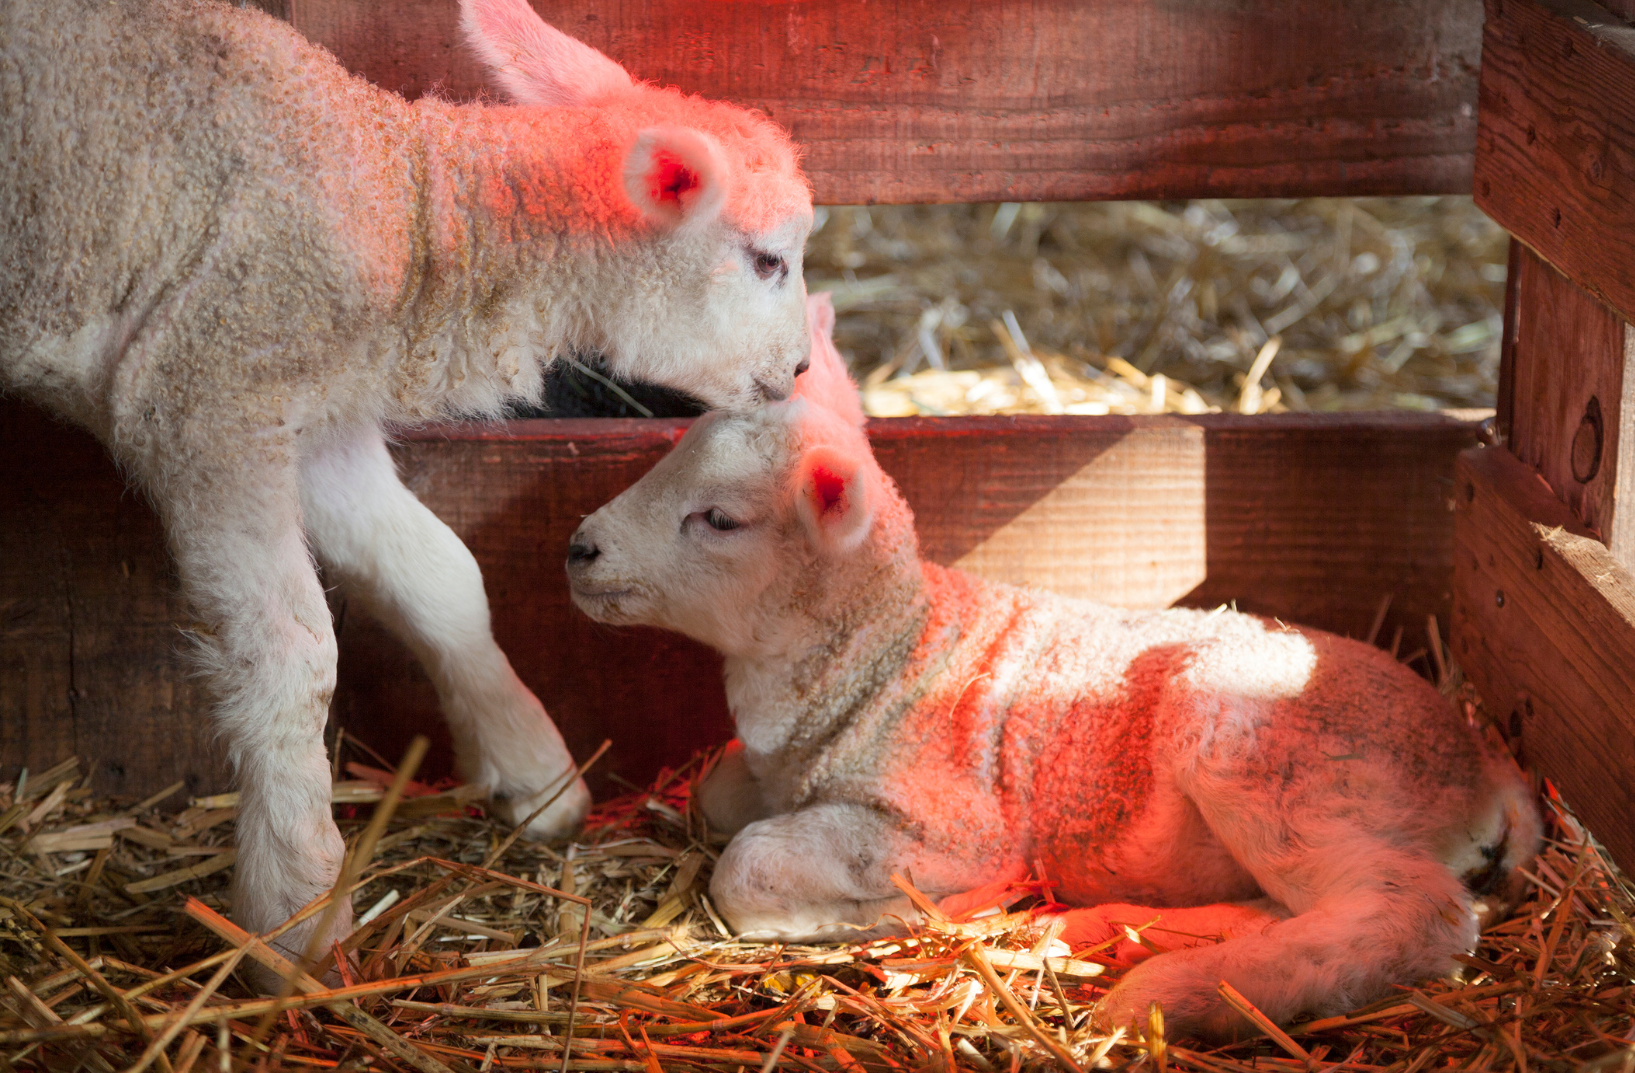 lambs keeping warm in winter under a heat lamp